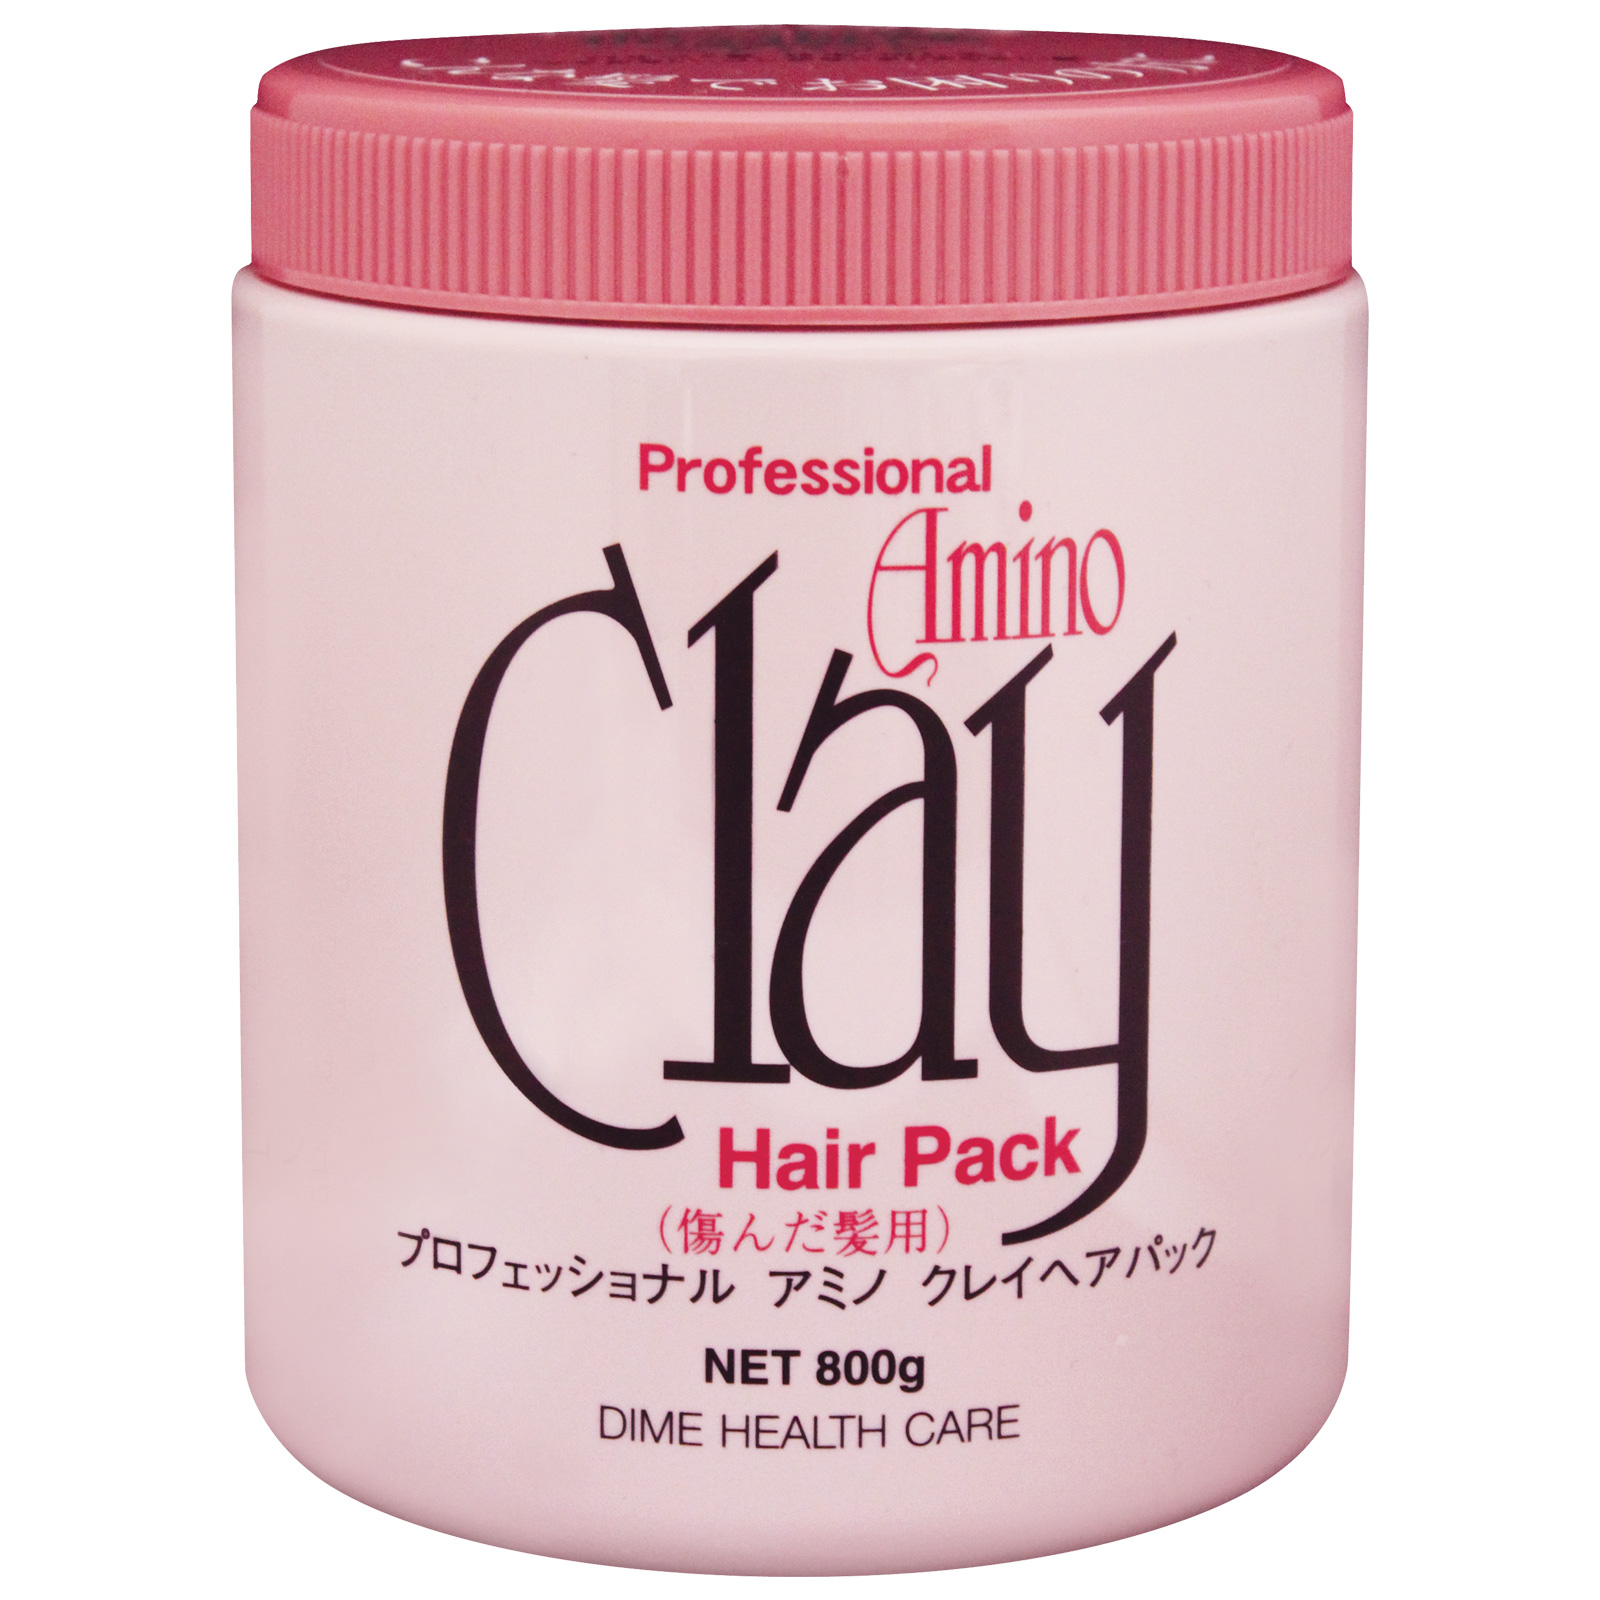 Dime Health Care. Professional Amino Clay Hair Pack Профессиональная маска на основе аминокислот и глины для повреждённых волос. 800 мл.